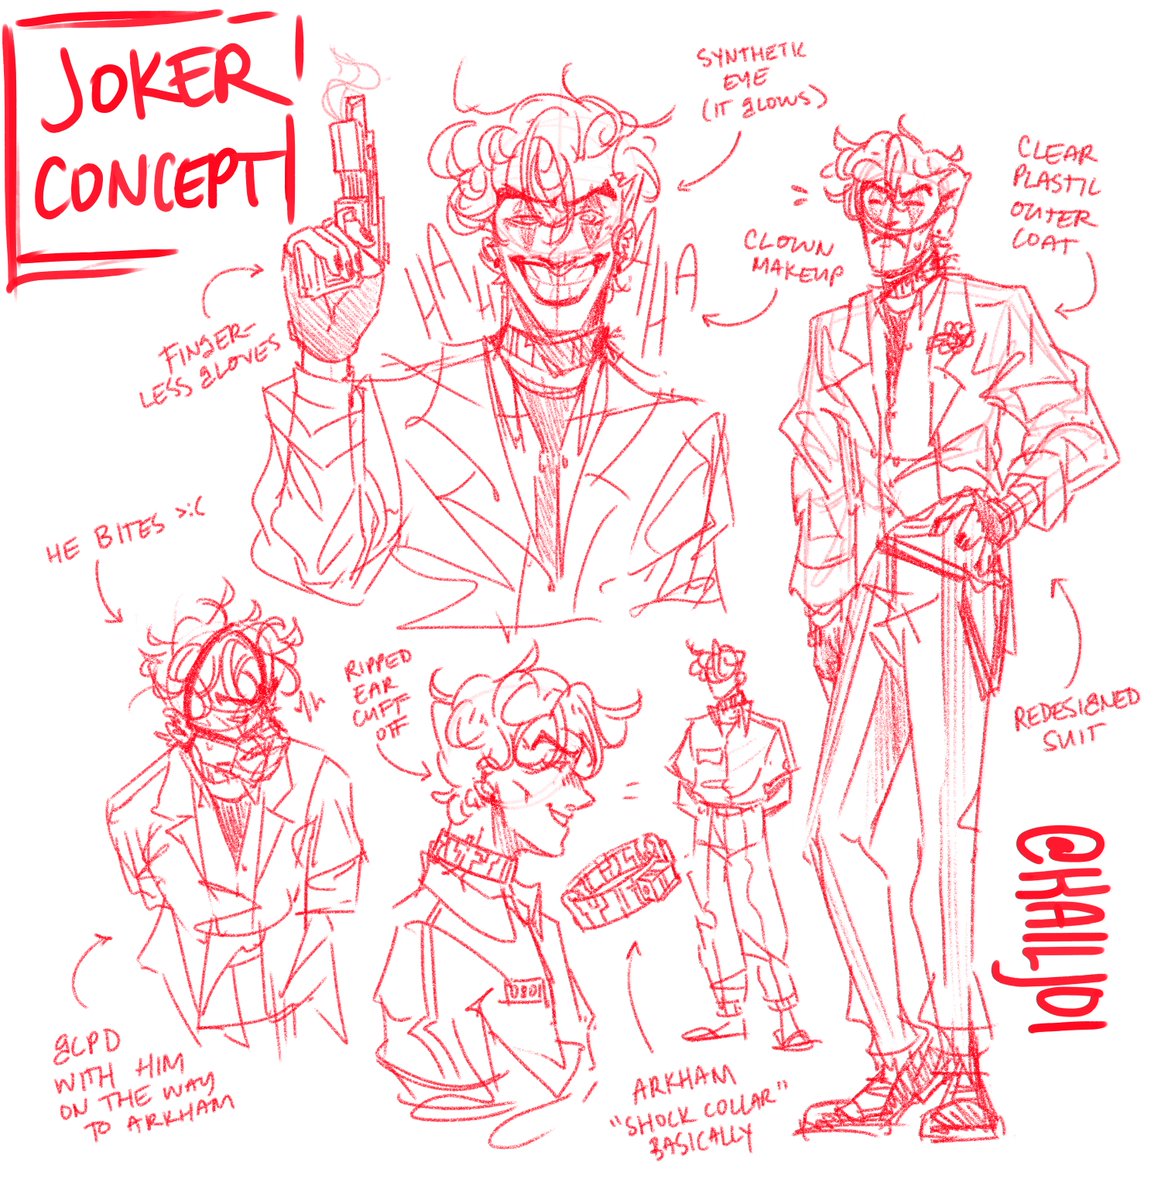 cyberpunk joker design; god i love cyberpunk aus so much